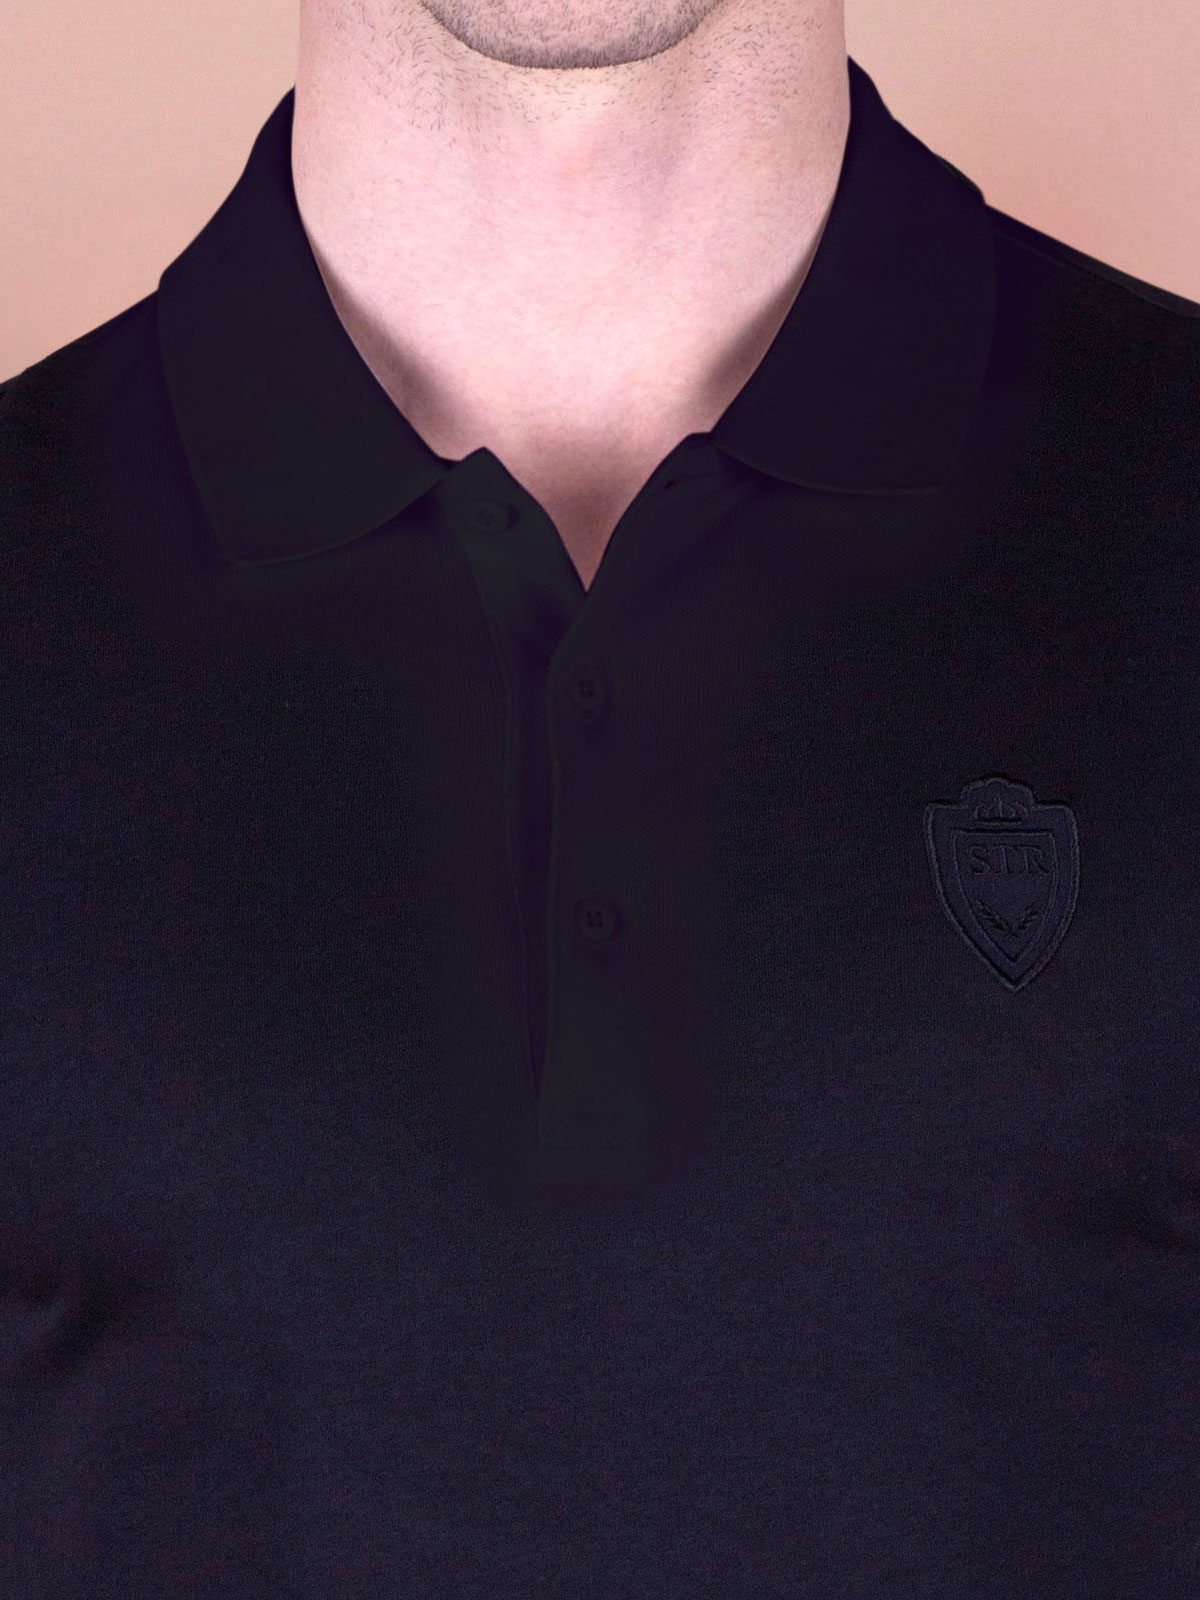 Μπλούζα σε μαύρο χρώμα με κεντημένο λογ - 94370 € 16.31 img2